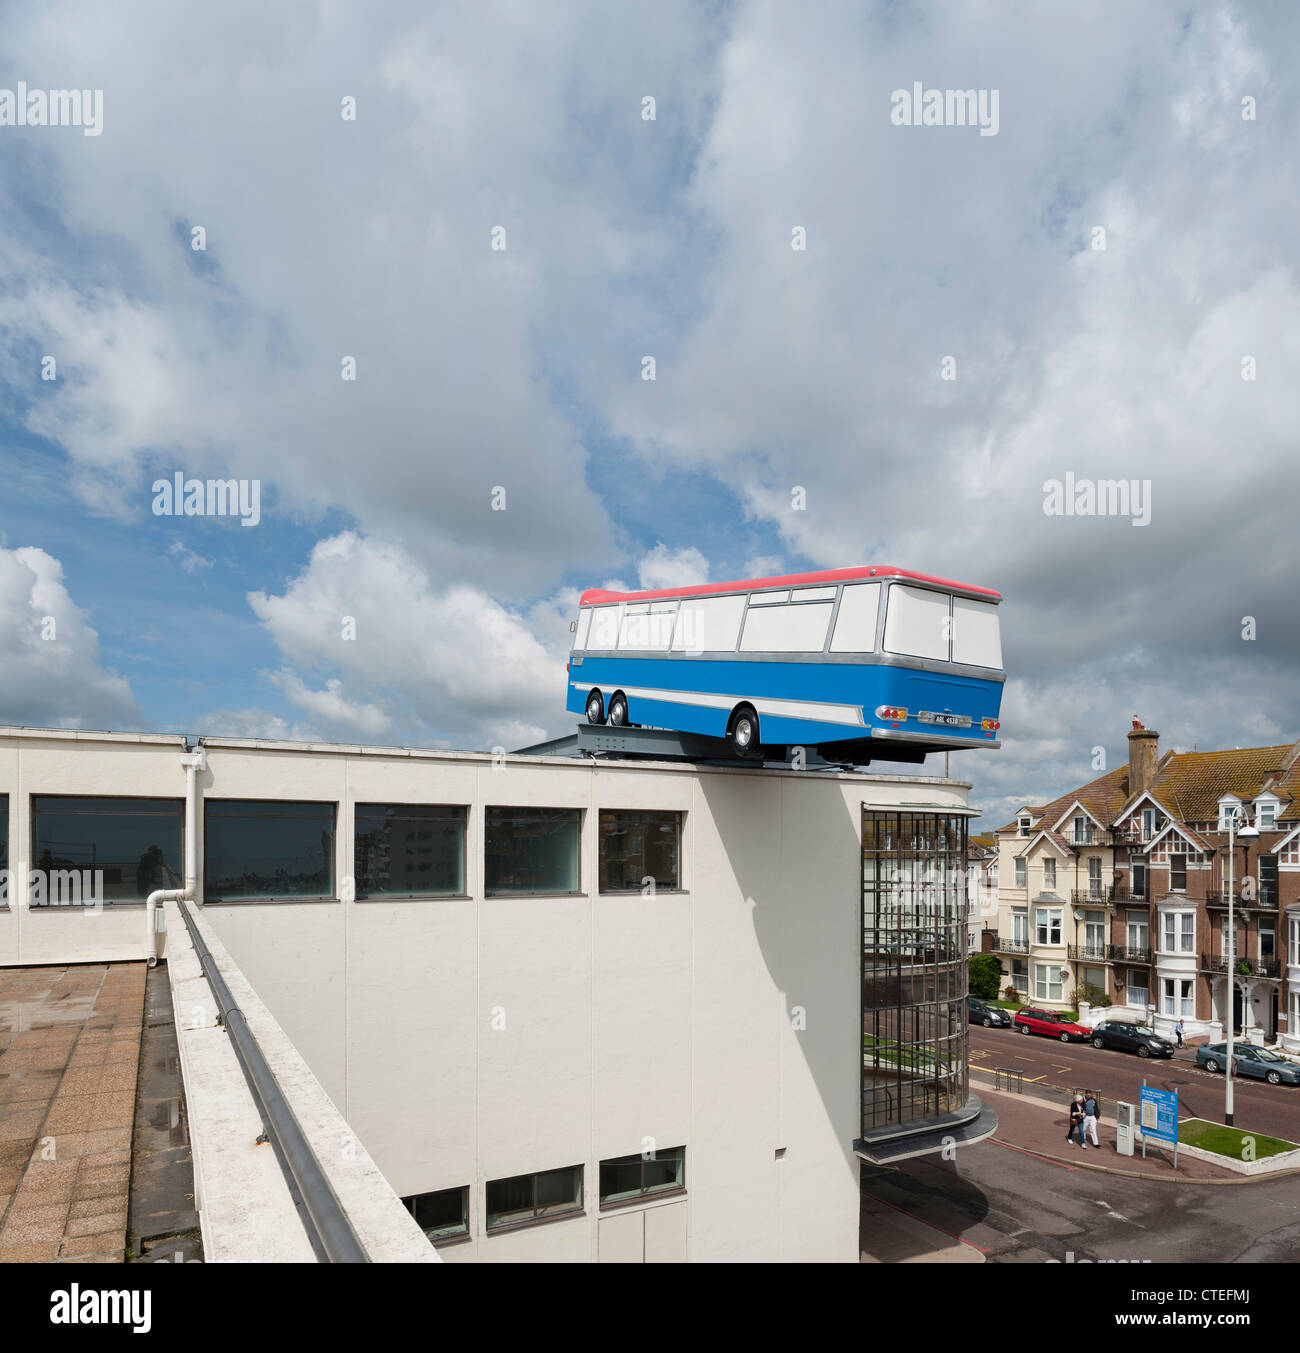 Hang On eine Minute Jungs, ich habe eine großartige Idee..., Bexhill, Großbritannien. Architekt: Richard Wilson, 2012. Blick vom Dach Terras Stockfoto